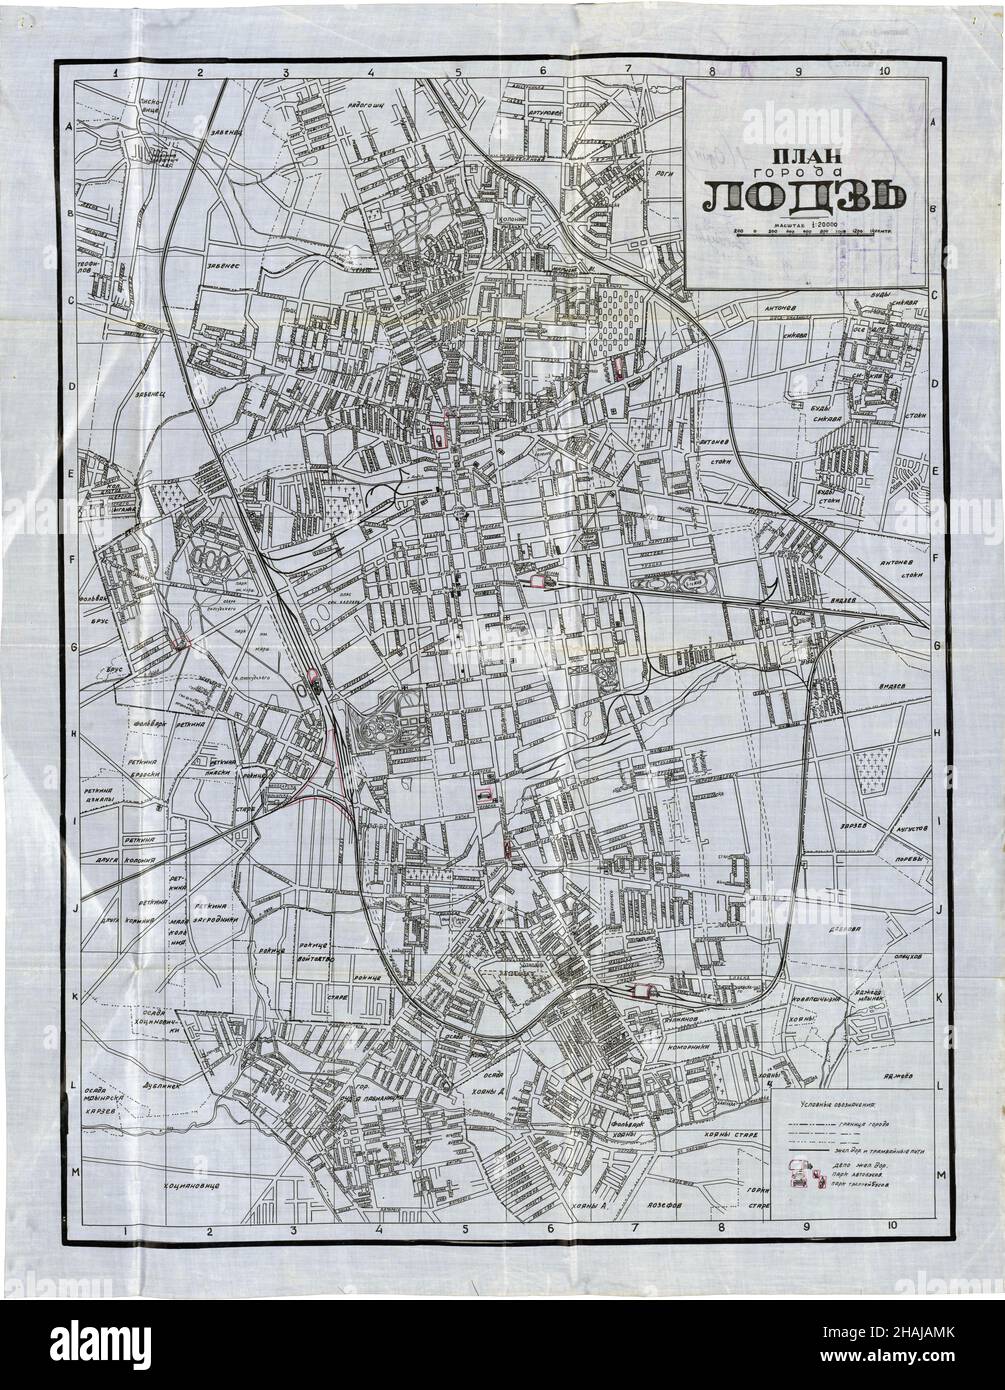 Lodz Map, Map of Lodz, Lodz Plan, Lodz Print, Lodz City Map, Lodz City Print, Lodz City Poster, Old Lodz Plan, Łódź Map, Łódź City, Plan of Łódź Stock Photo